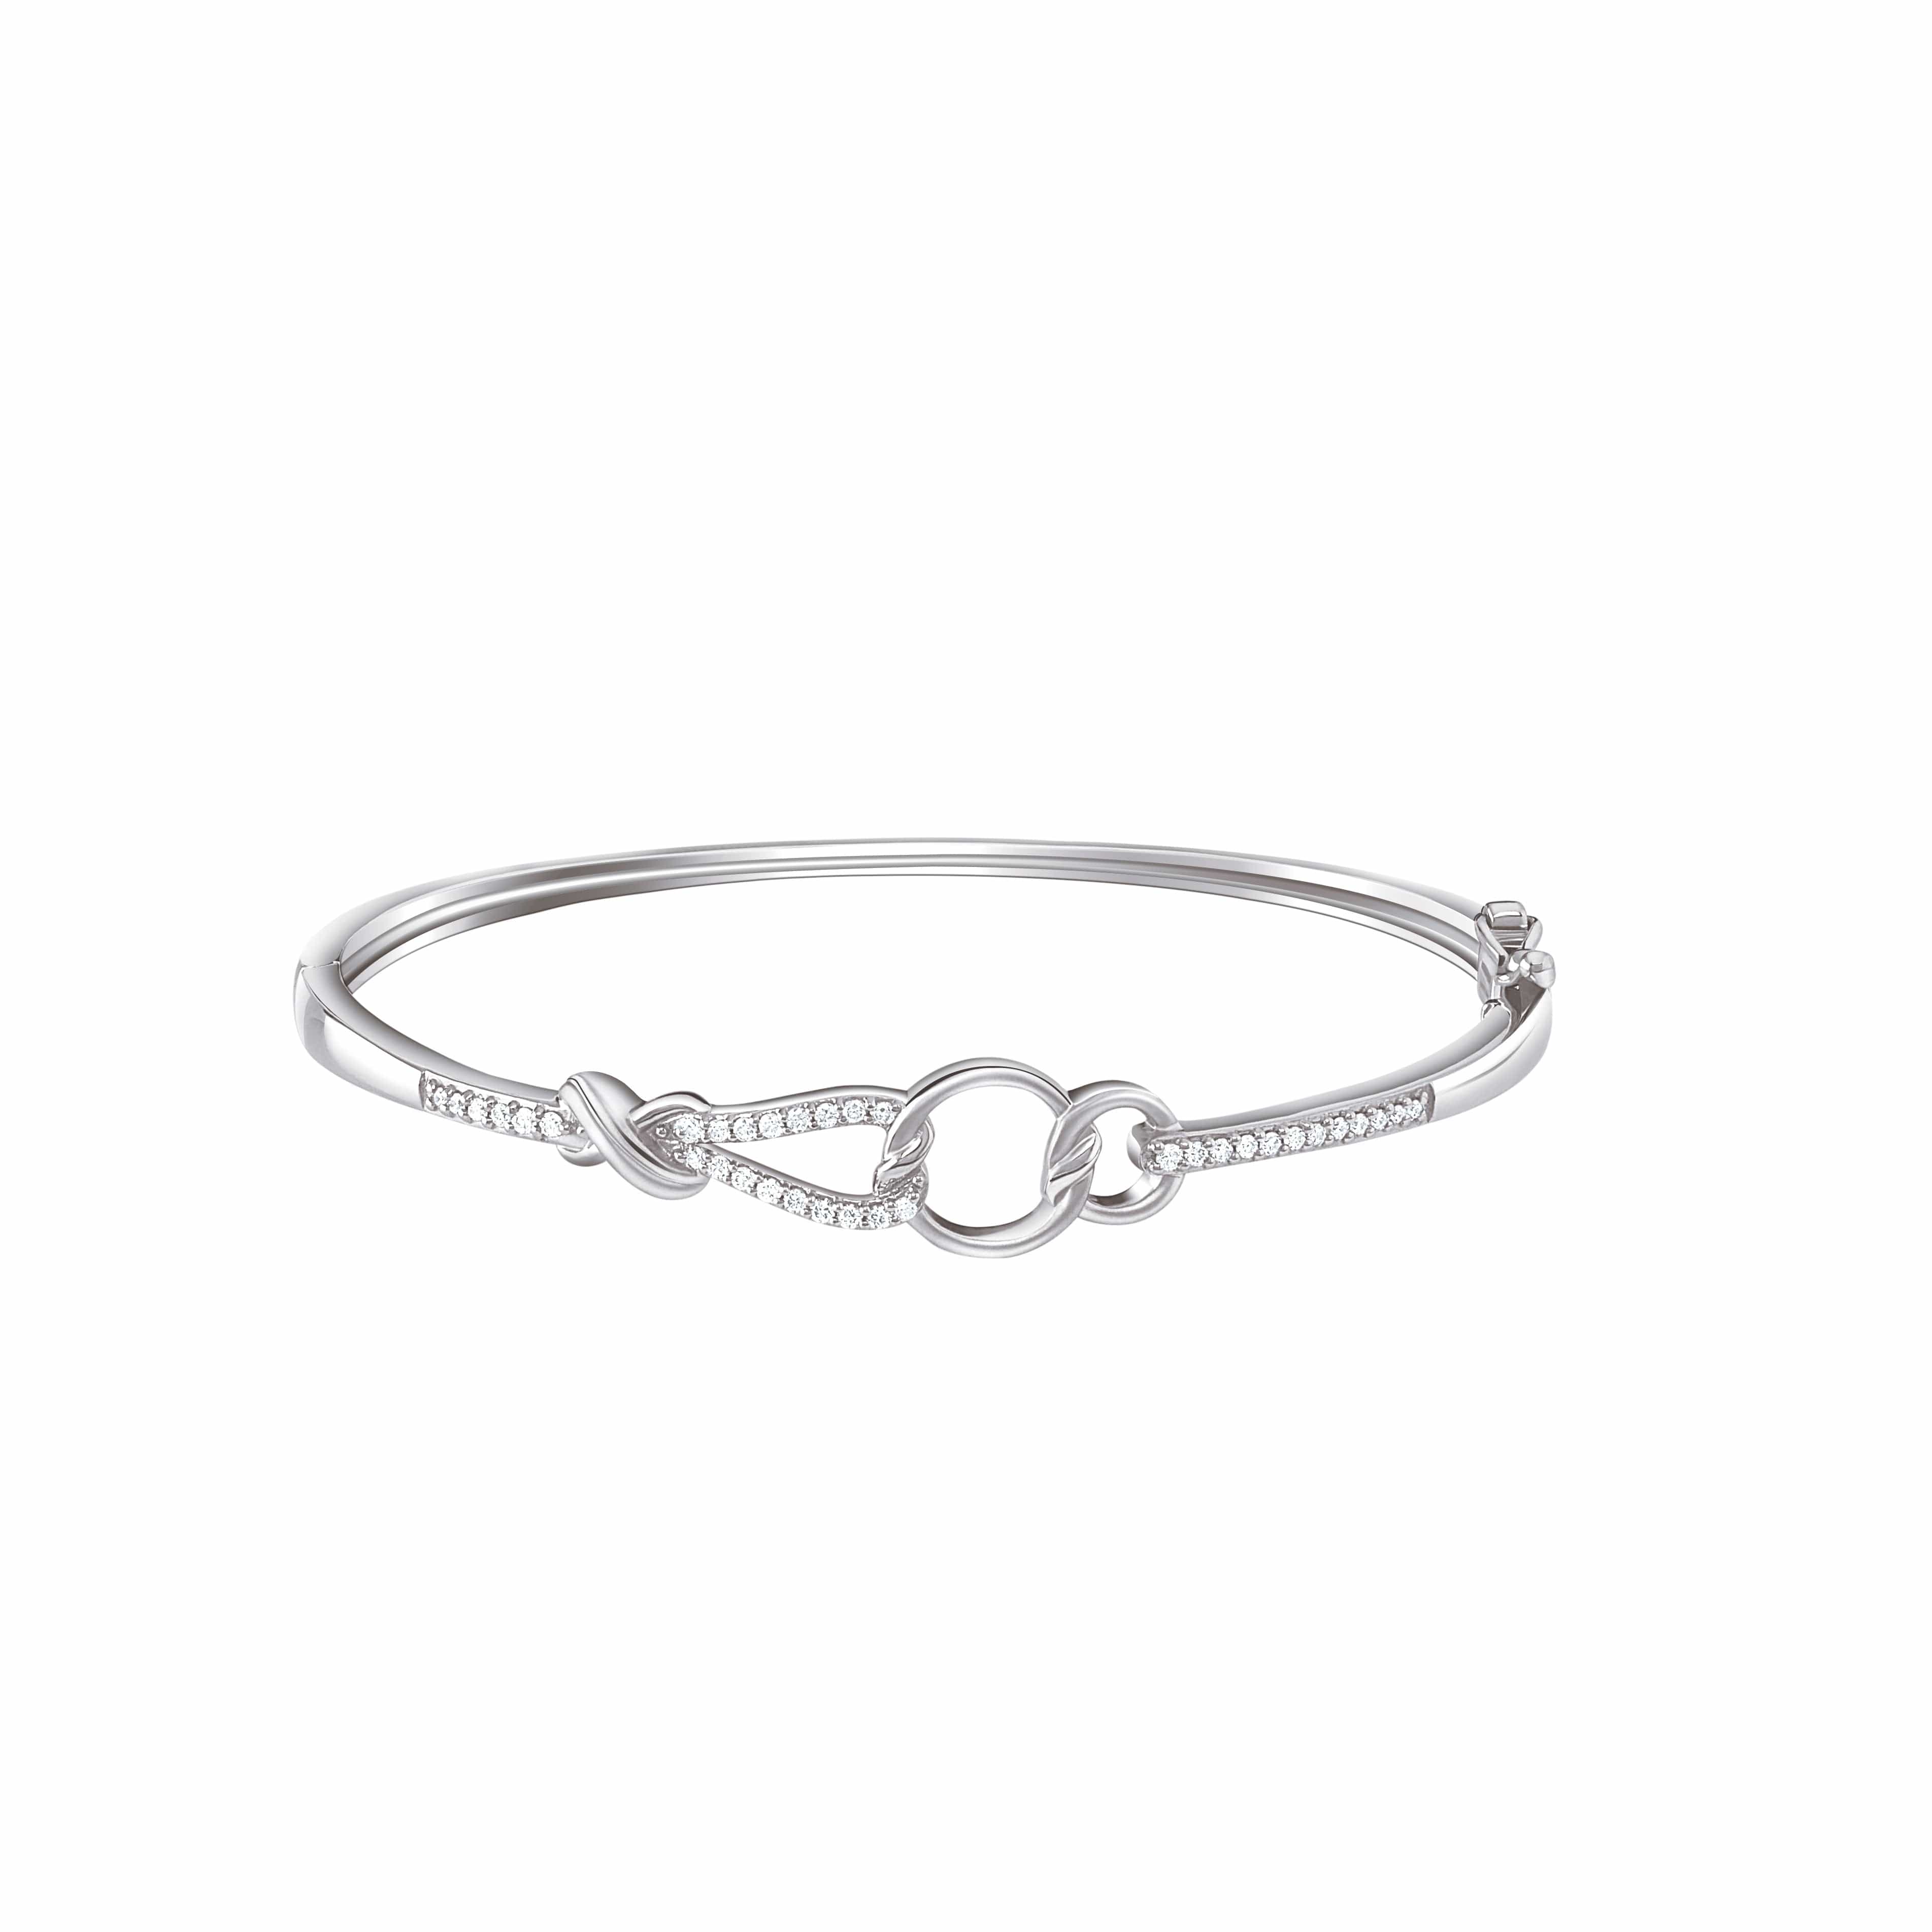 zuhurby tanishq | Diamond earrings design, Sterling silver diamond bracelets,  Jewelry